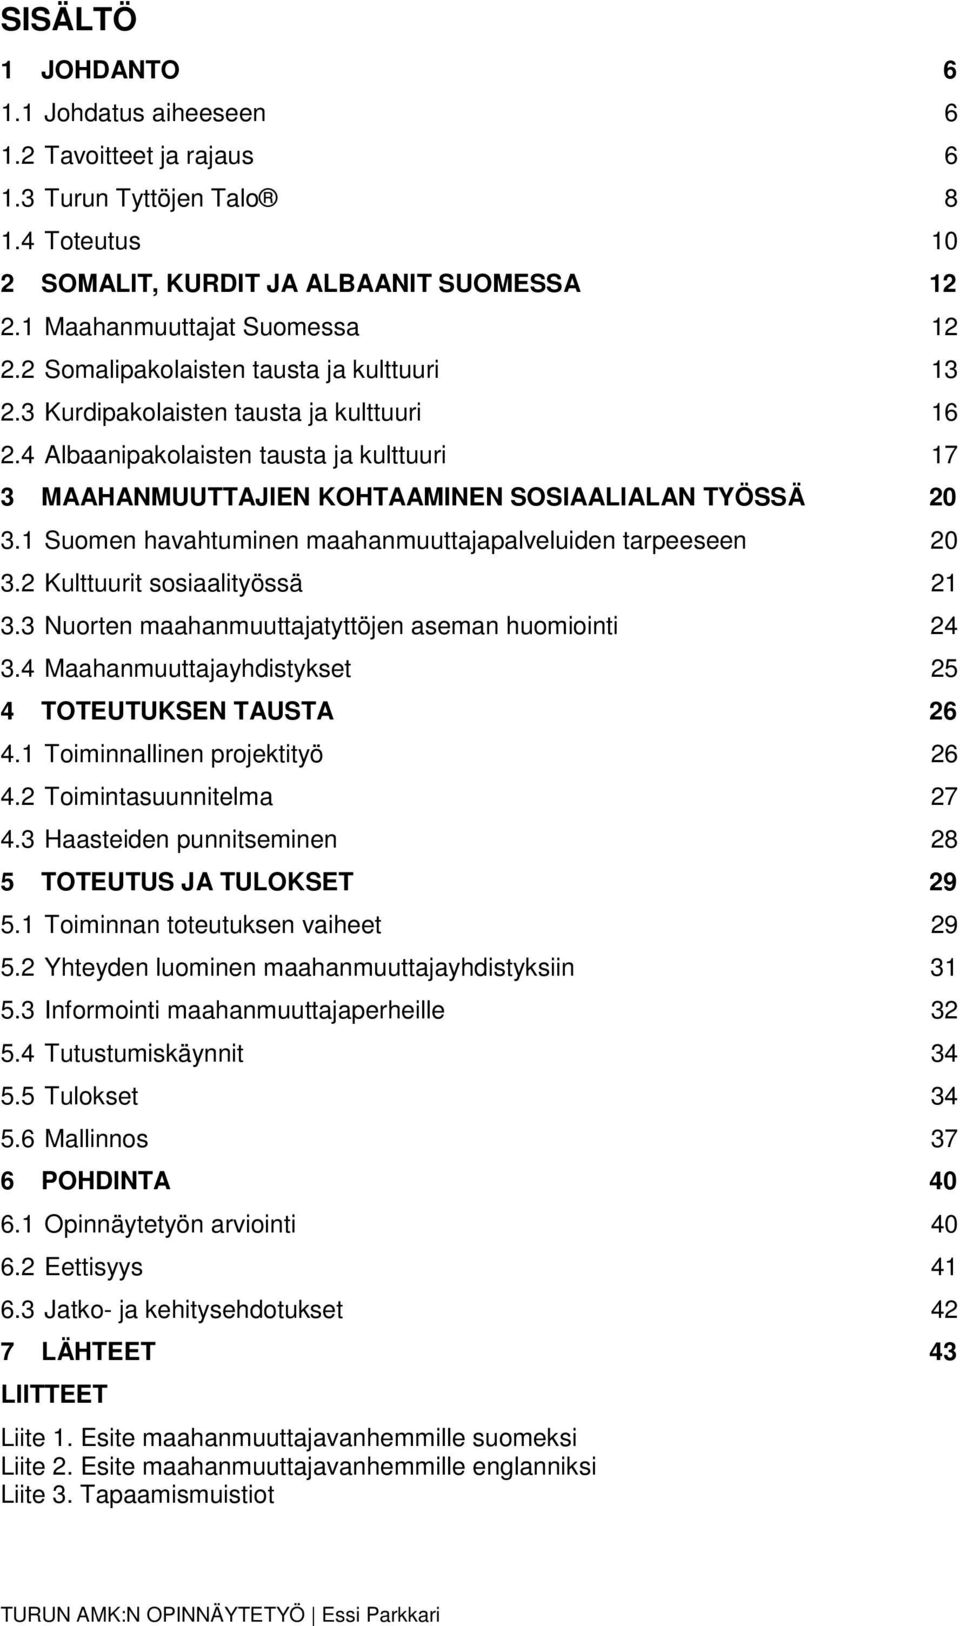 1 Suomen havahtuminen maahanmuuttajapalveluiden tarpeeseen 20 3.2 Kulttuurit sosiaalityössä 21 3.3 Nuorten maahanmuuttajatyttöjen aseman huomiointi 24 3.